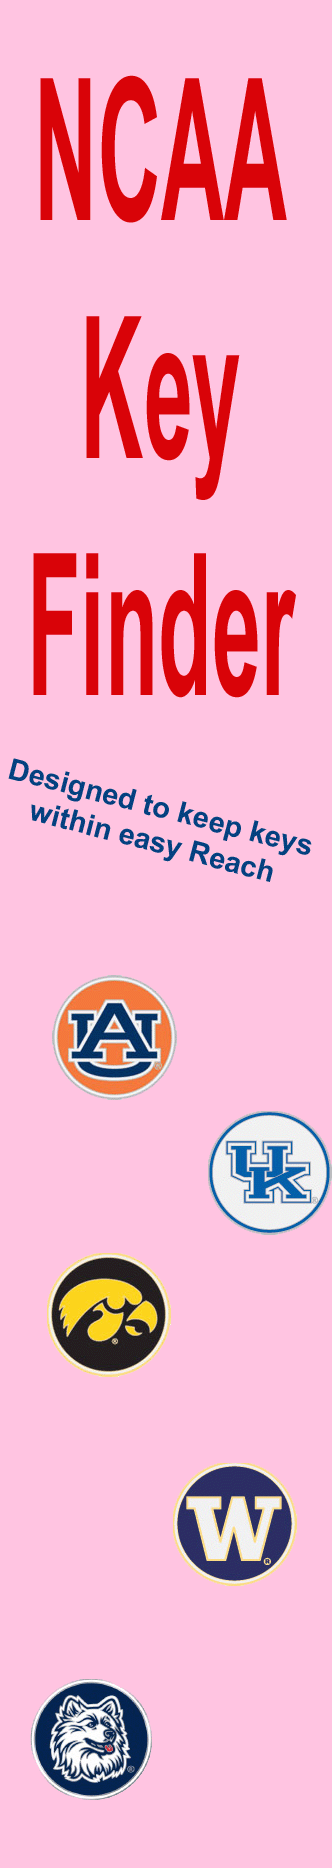 NCAA Key Finders